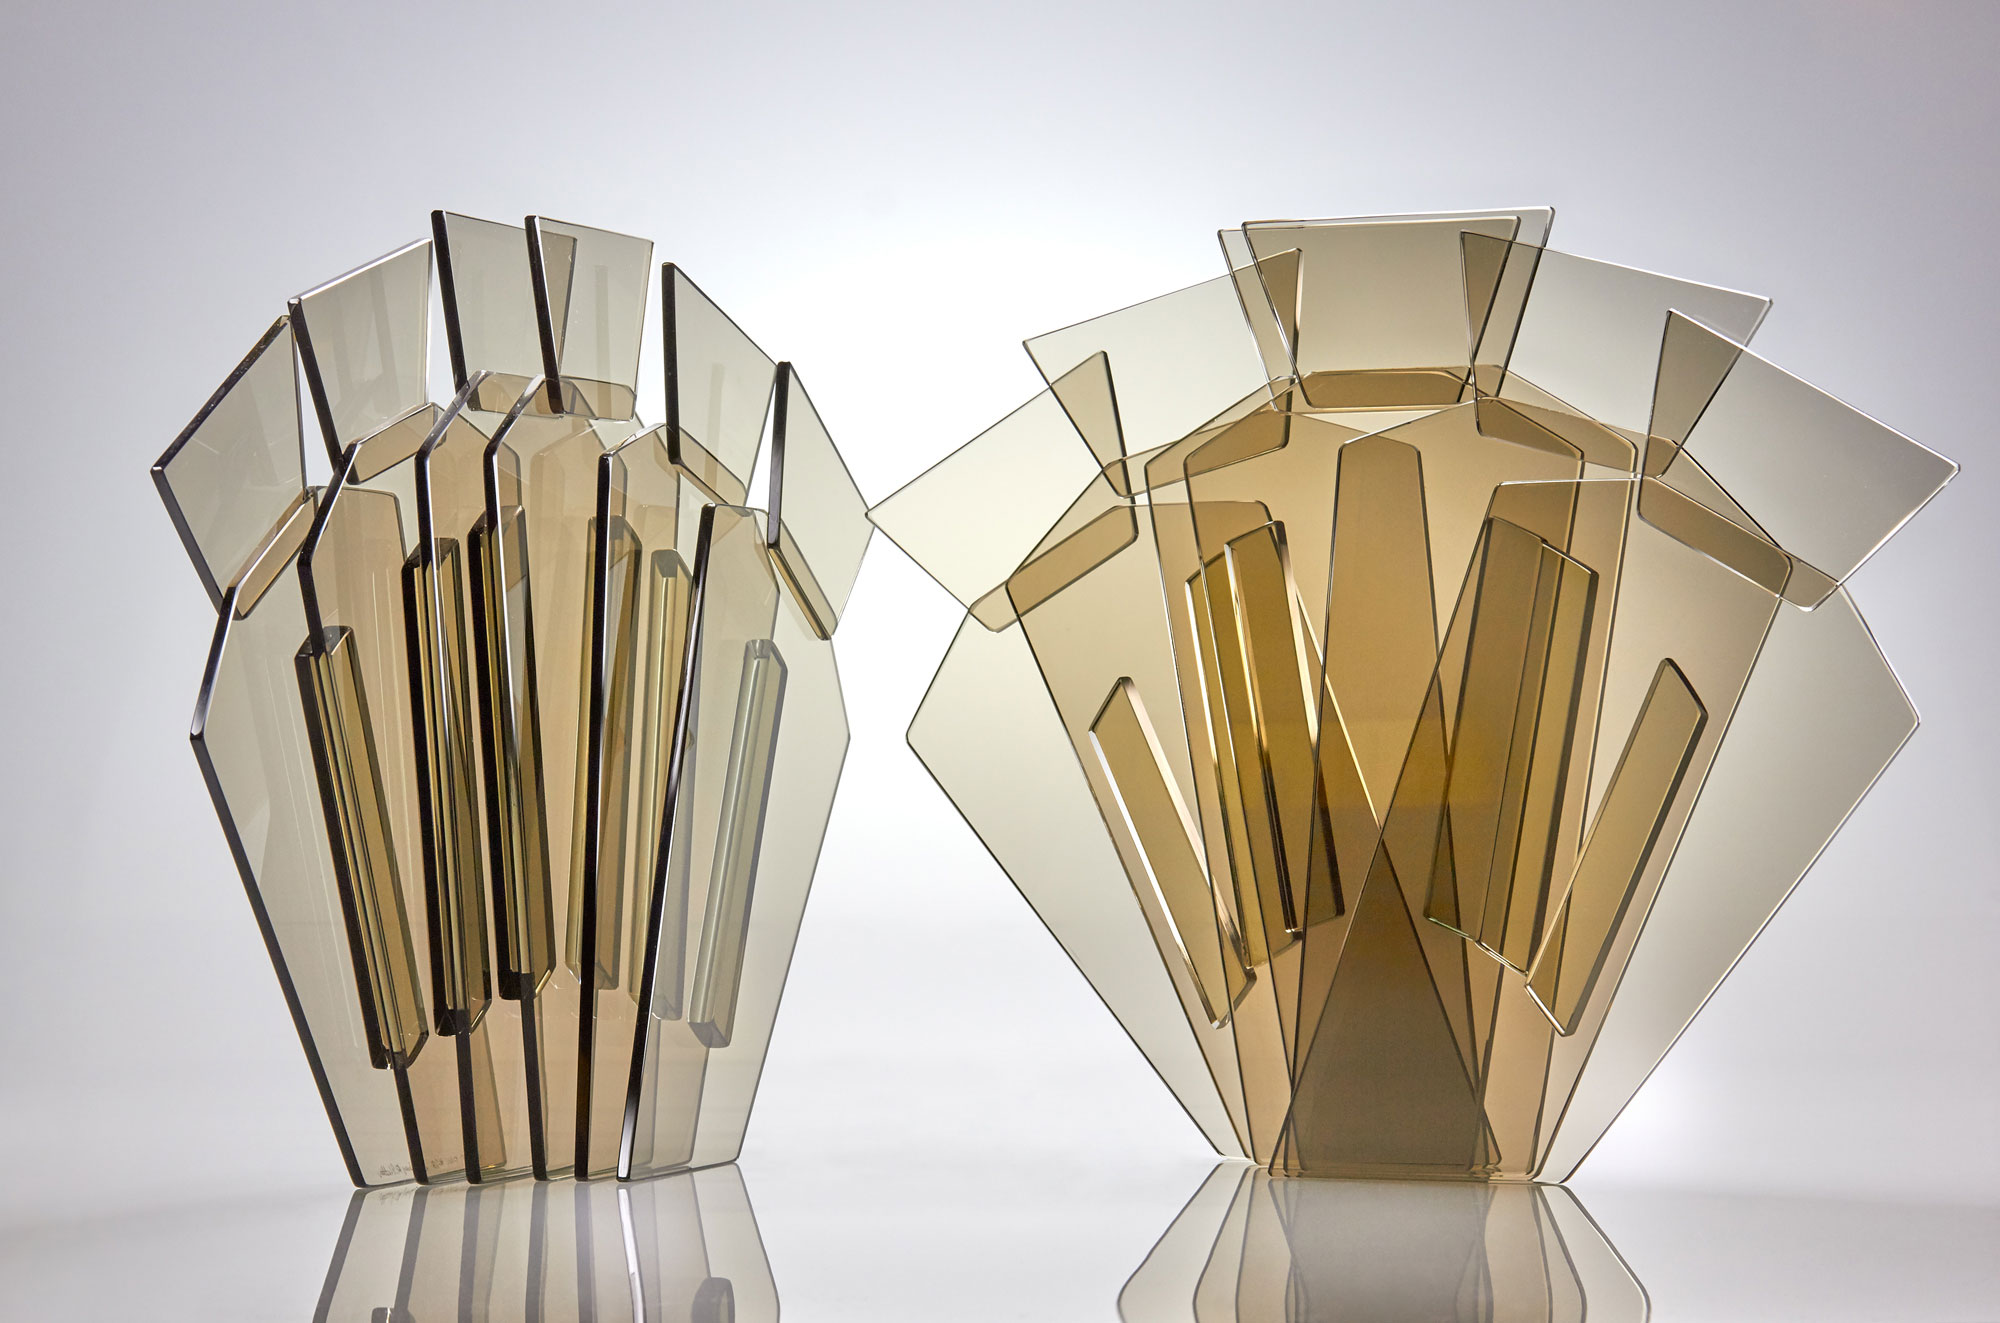 Vertifan Sculptures by Glass Artist Sidney Hutter